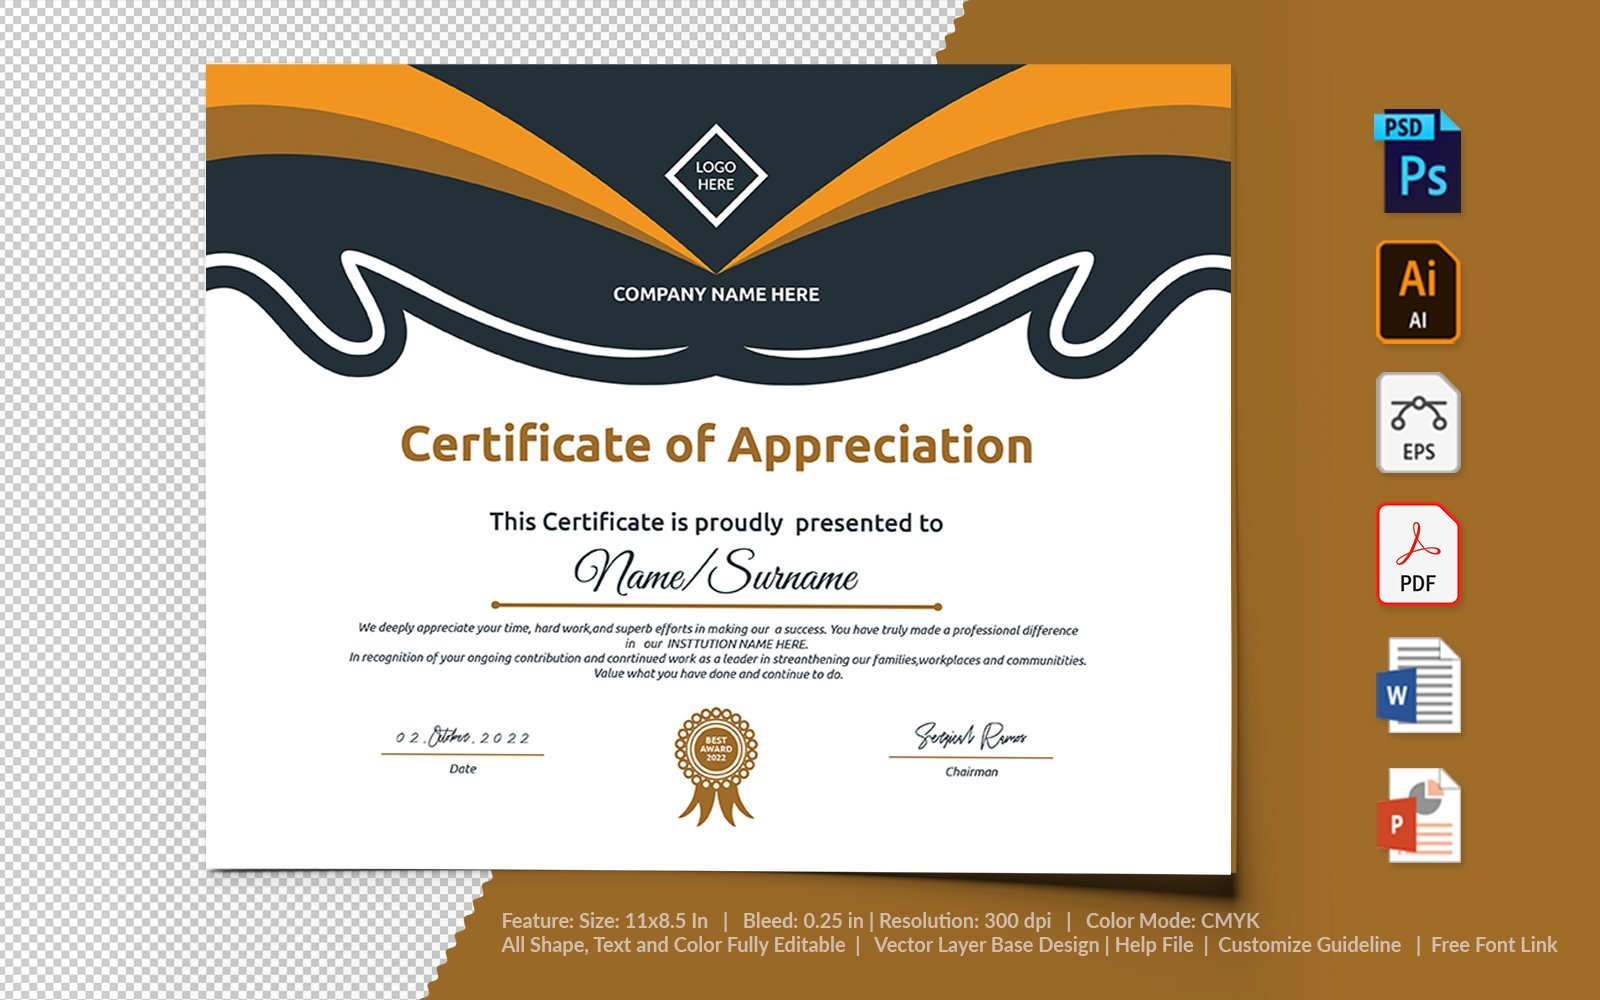 Kit Graphique #104735 Certificate Appreciation Divers Modles Web - Logo template Preview